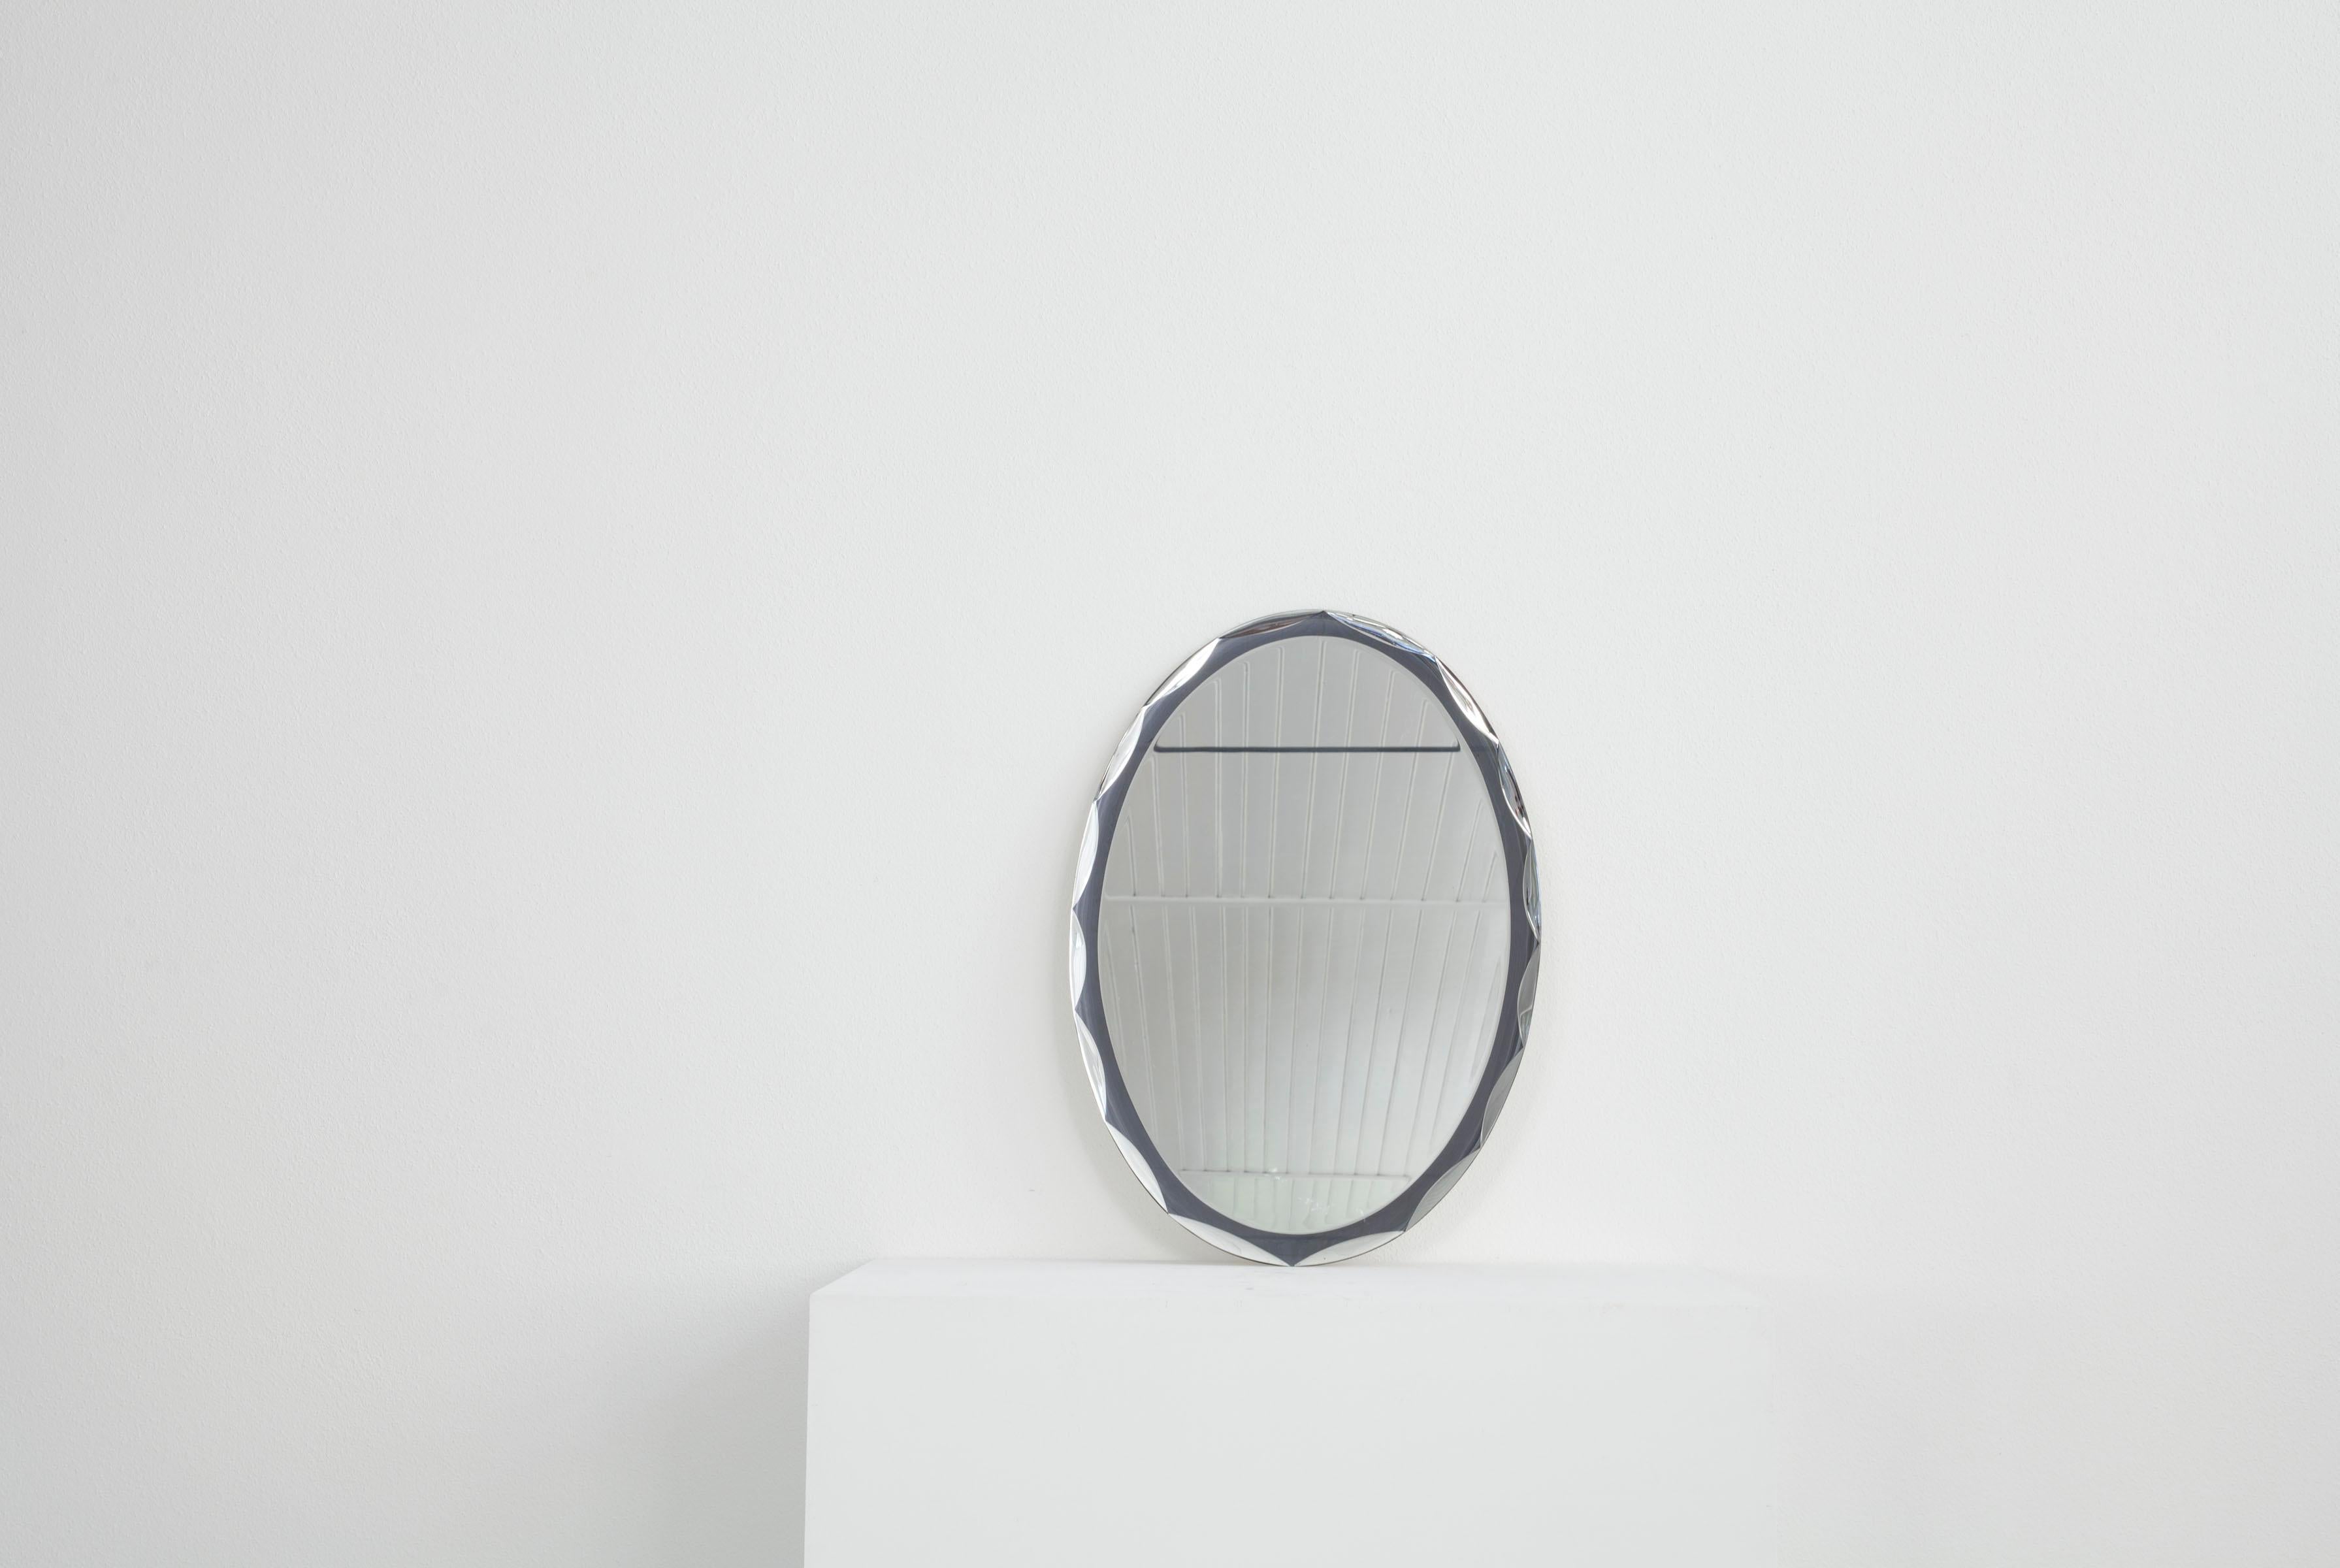 Dieser ovale, italienische Wandspiegel stammt aus den 1960er Jahren. Das Besondere an diesem Spiegel ist der Rahmen, der ebenfalls aus verspiegeltem Glas besteht und in dem sich ein Muster befindet. Der Spiegel ist in gutem Zustand.

.